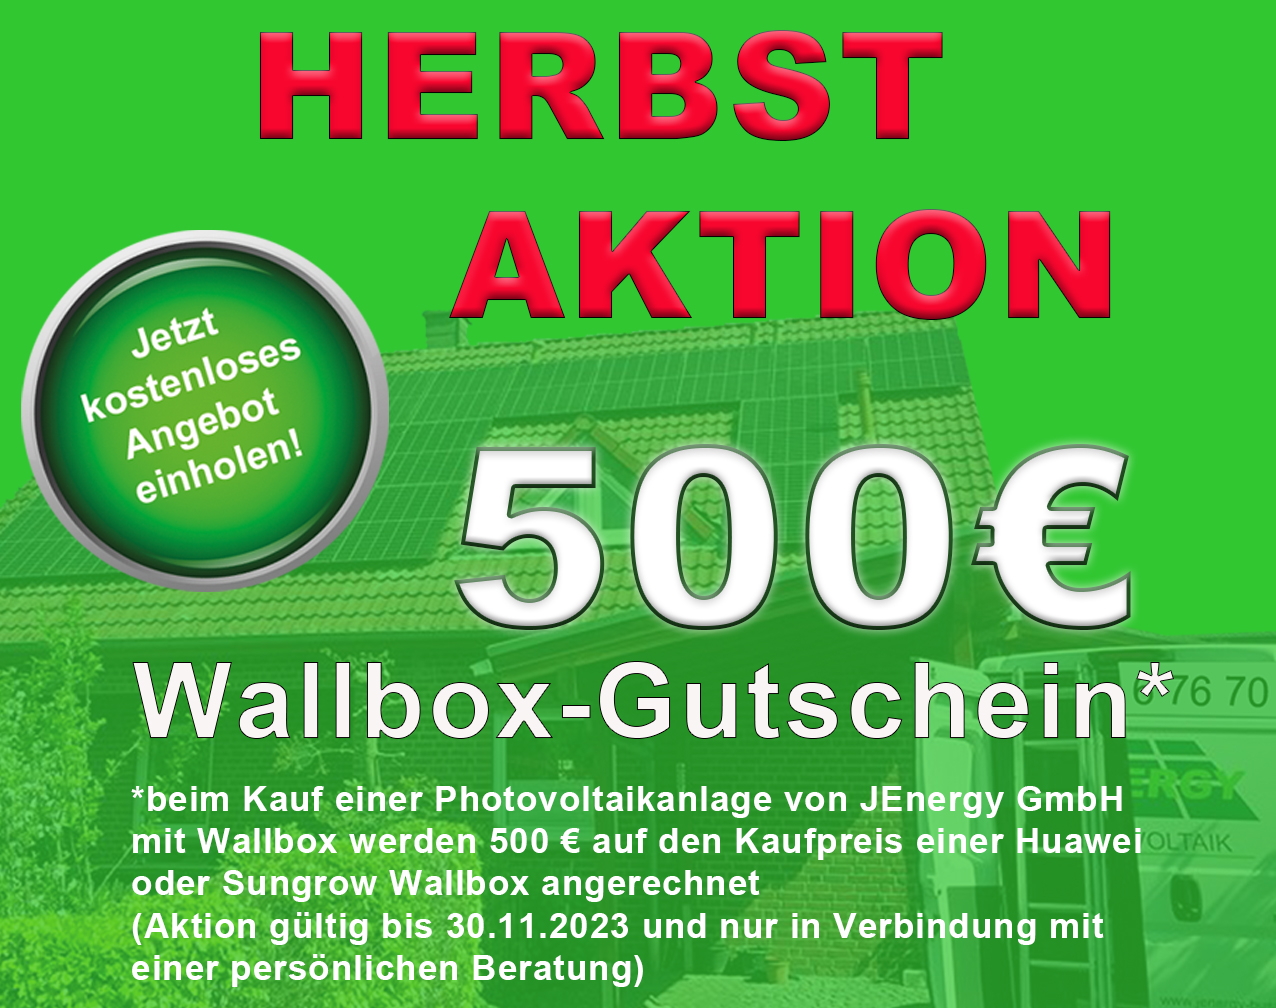 Herbstaktion Wallbox-Gutschein 500 EUR zu einer Photovoltaikanlage